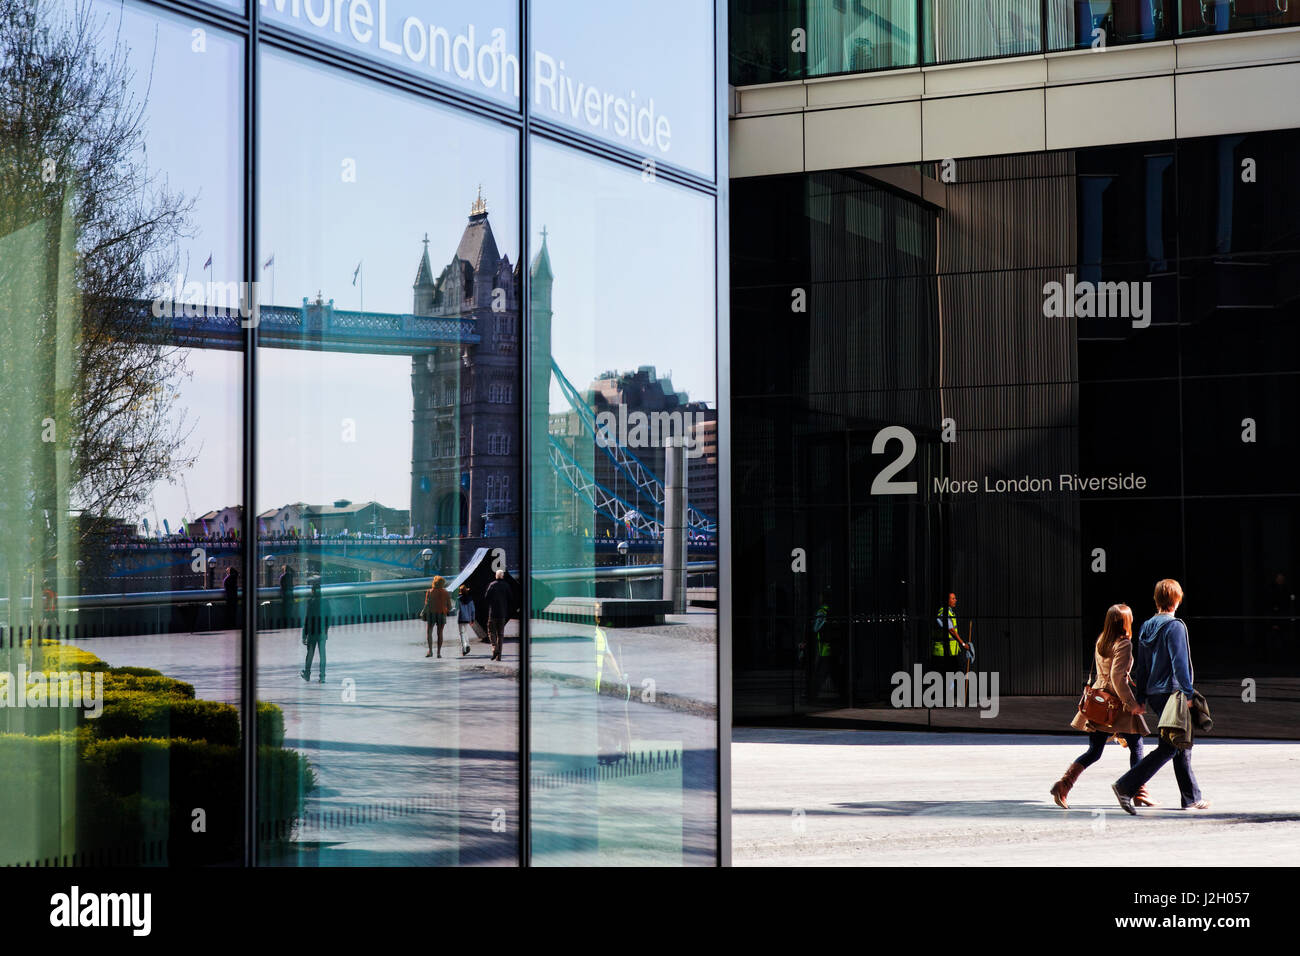 La riflessione di Tower Bridge in una facciata dell'edificio per uffici di più Londra Riverside, Southwark, Londra, Inghilterra, Regno Unito Foto Stock